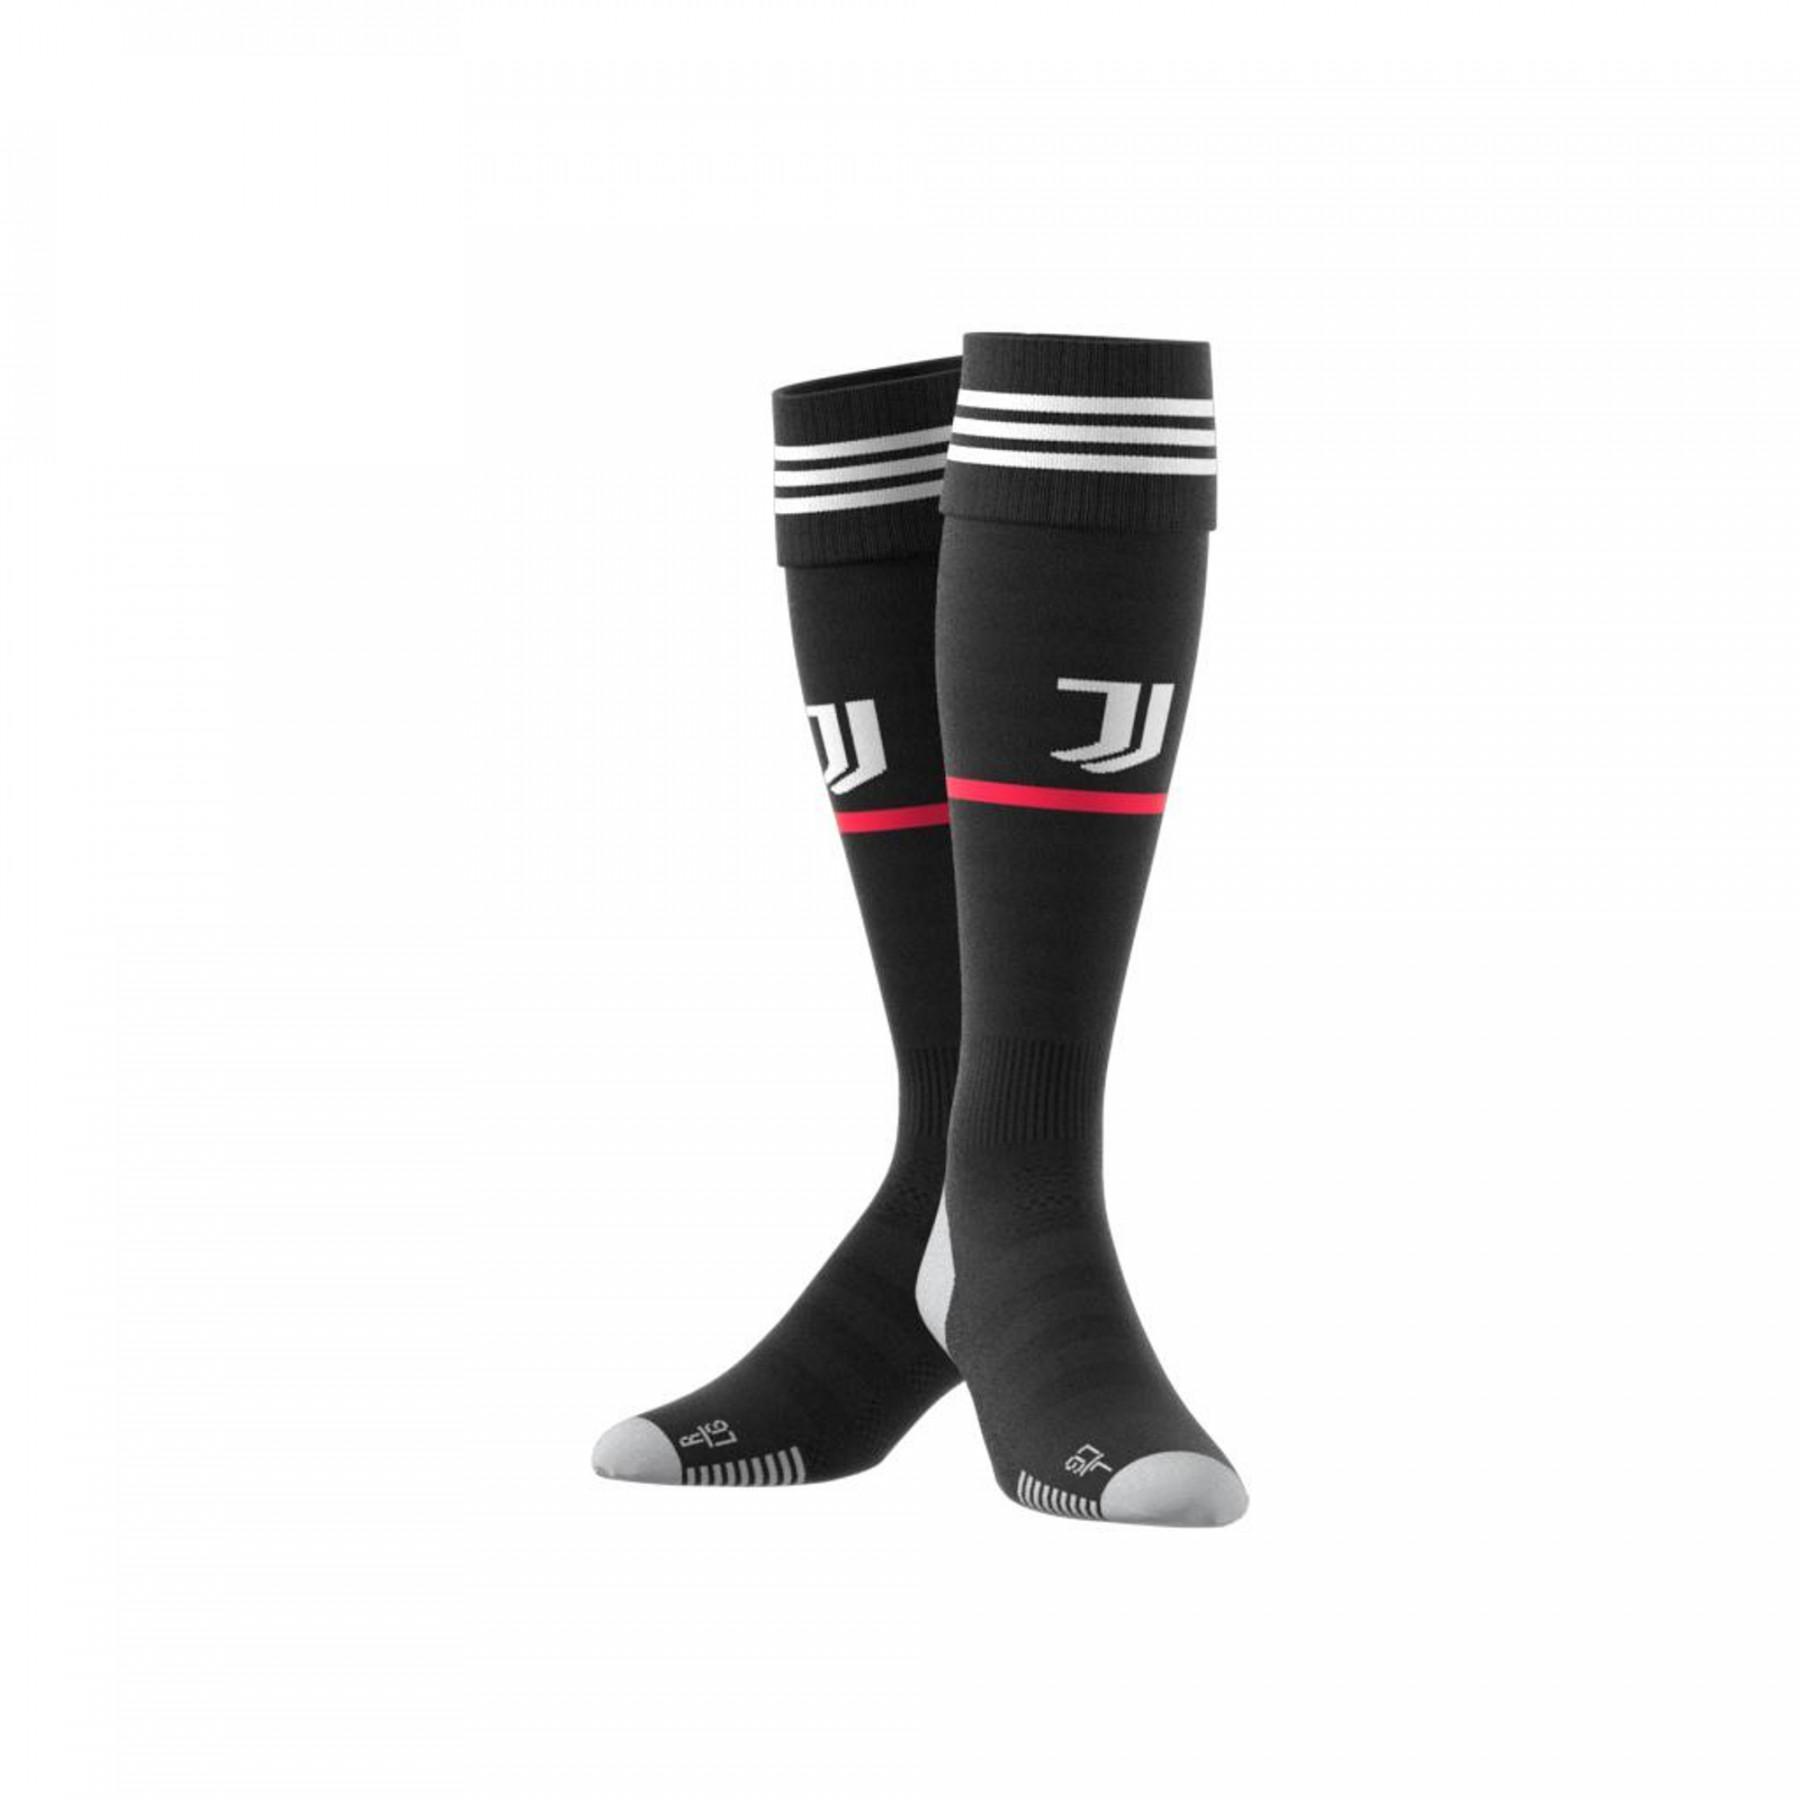 Home sokken Juventus 2019/20